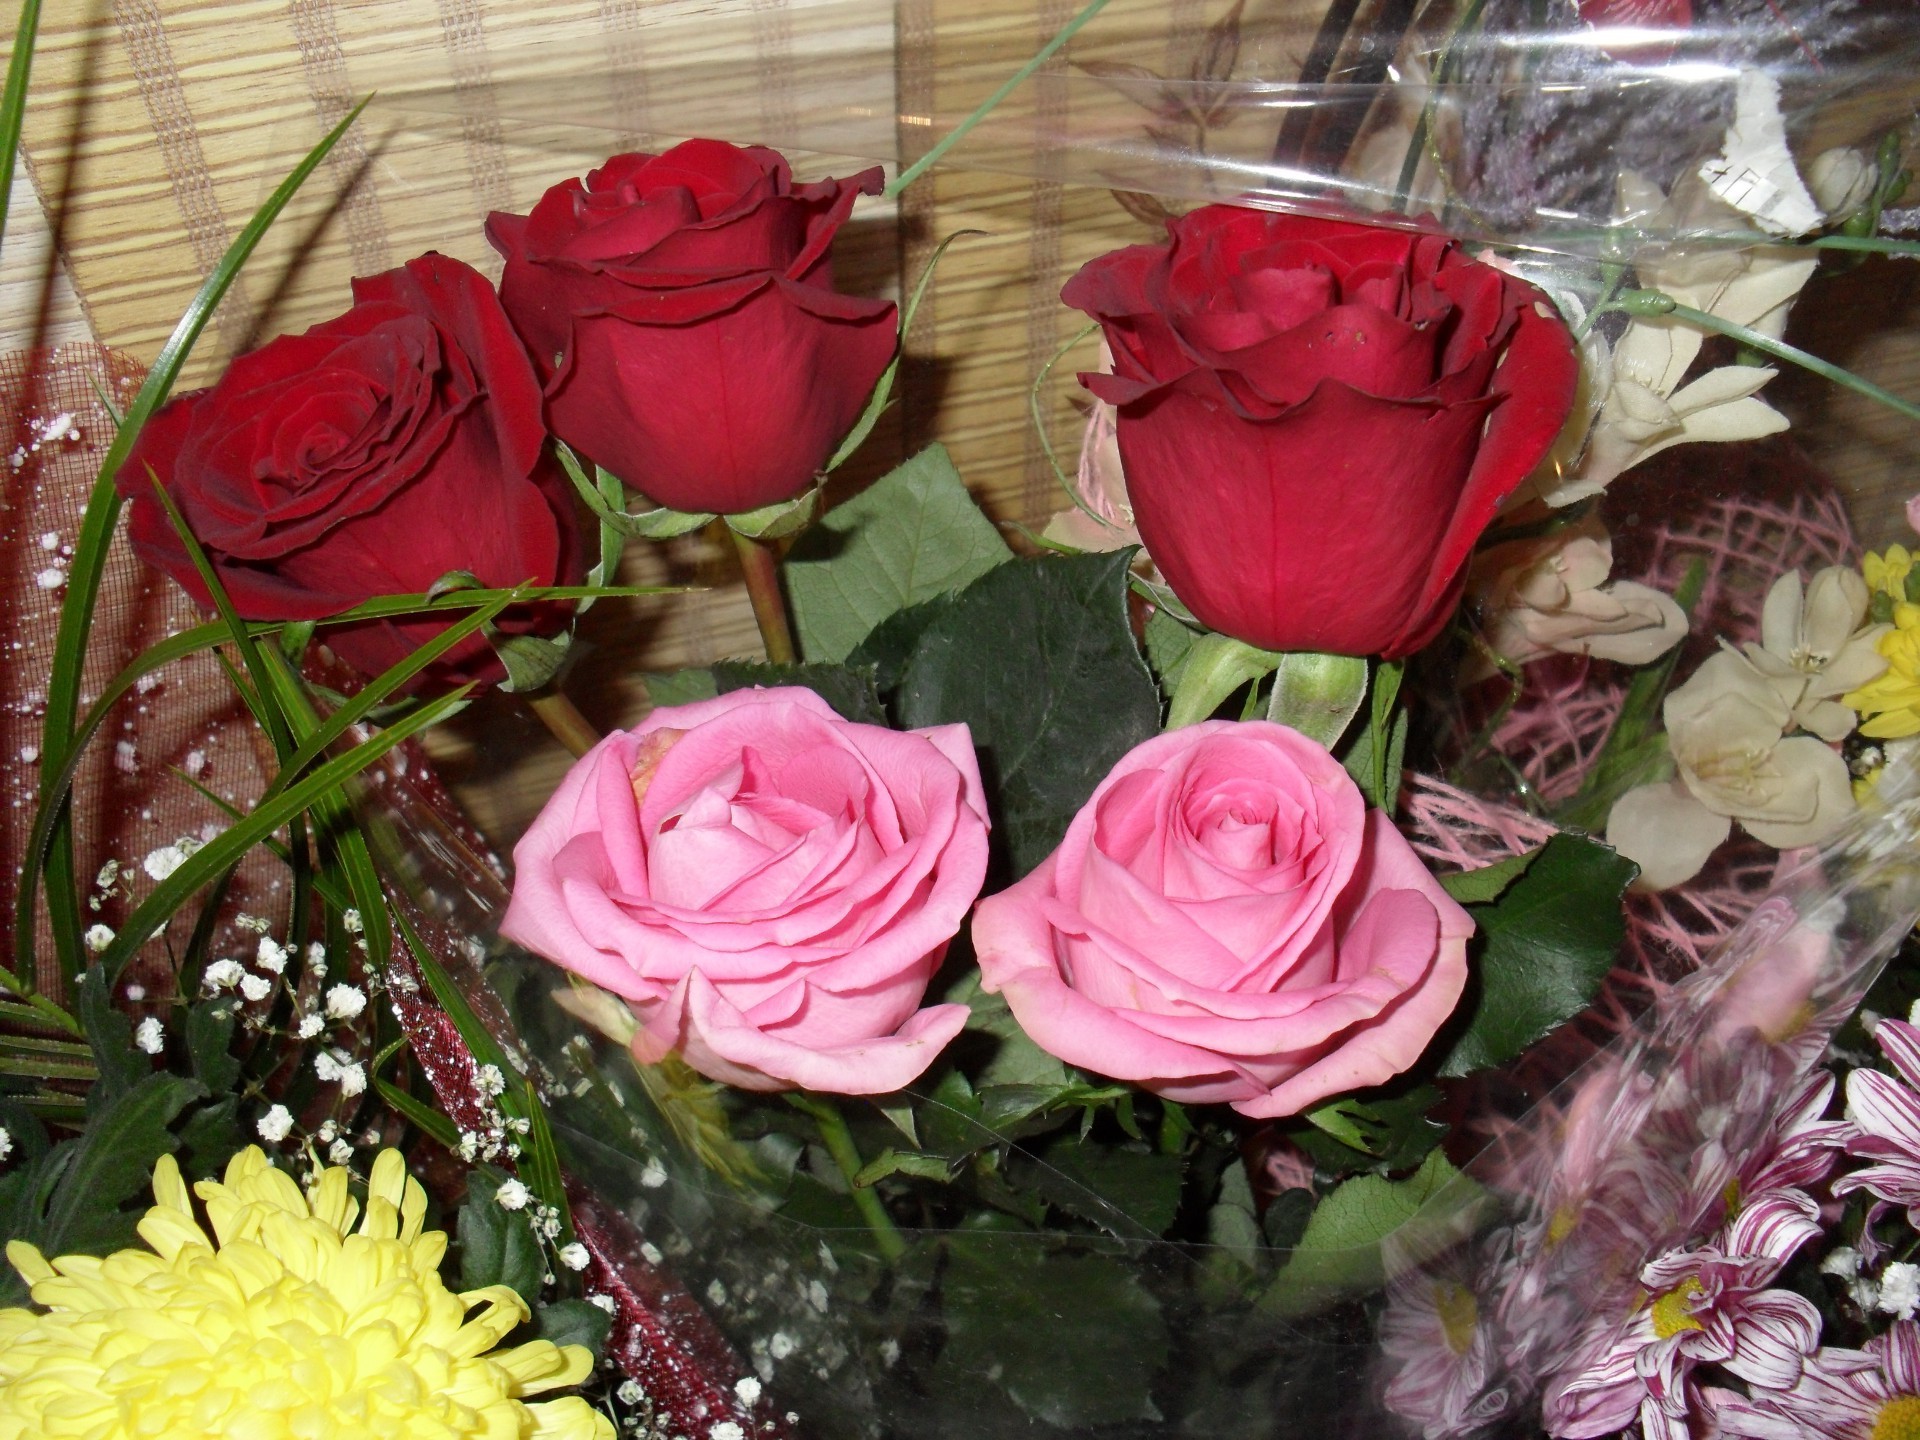 цветы роза цветок букет любовь романтика свадьба цветочные флора лепесток подарок природа праздник блюминг лист украшения романтический расположение